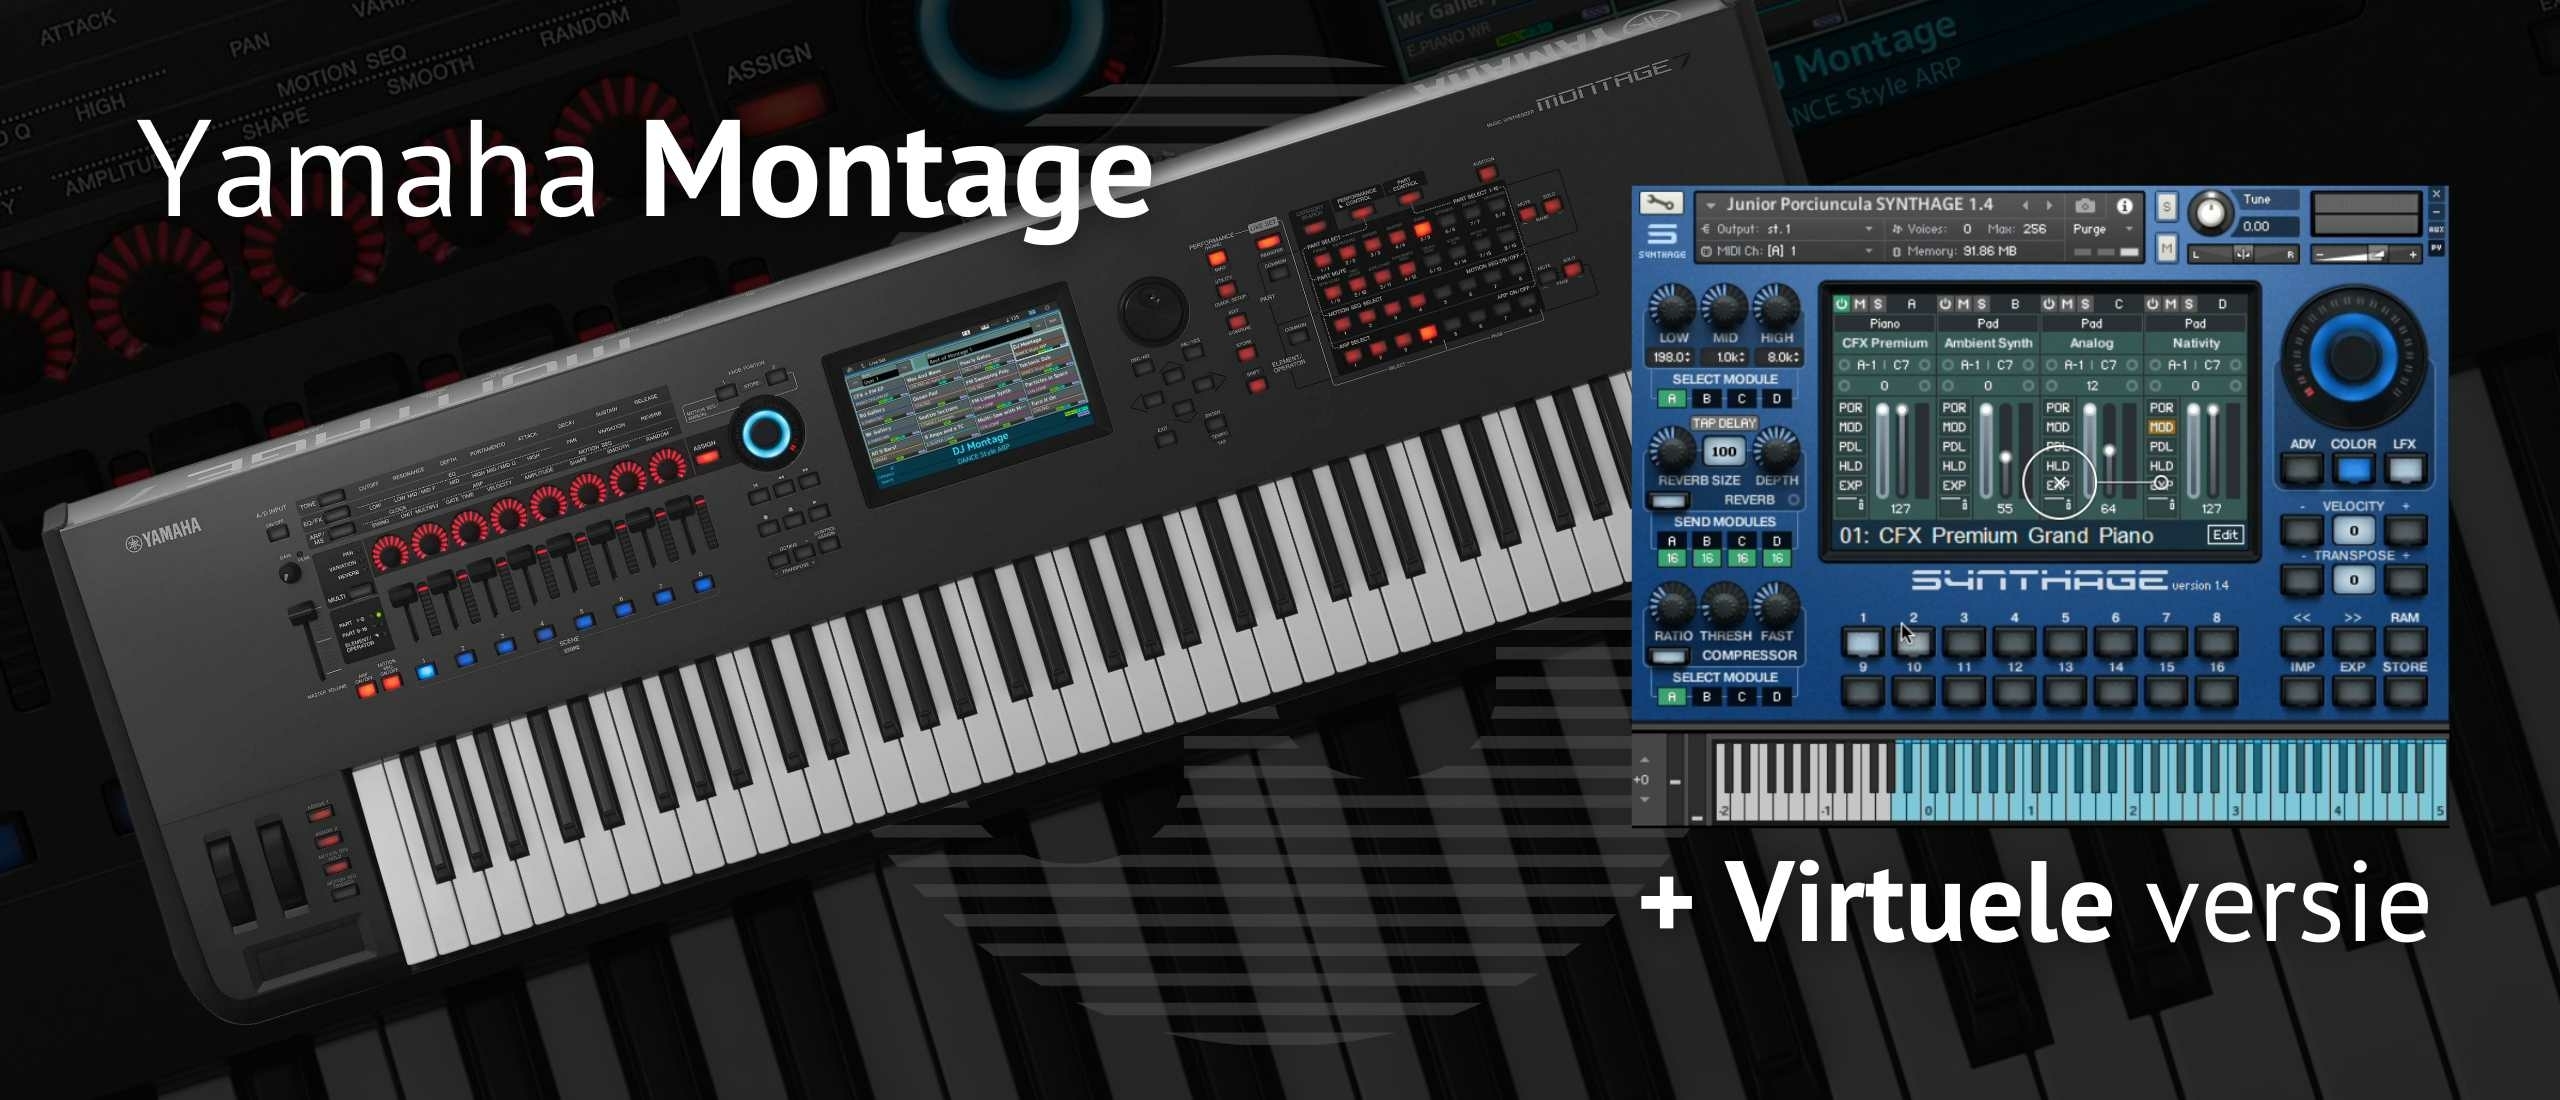 Yamaha Montage Synthesizer: Een Icoon van Innovatie en Kwaliteit in de Muziekindustrie